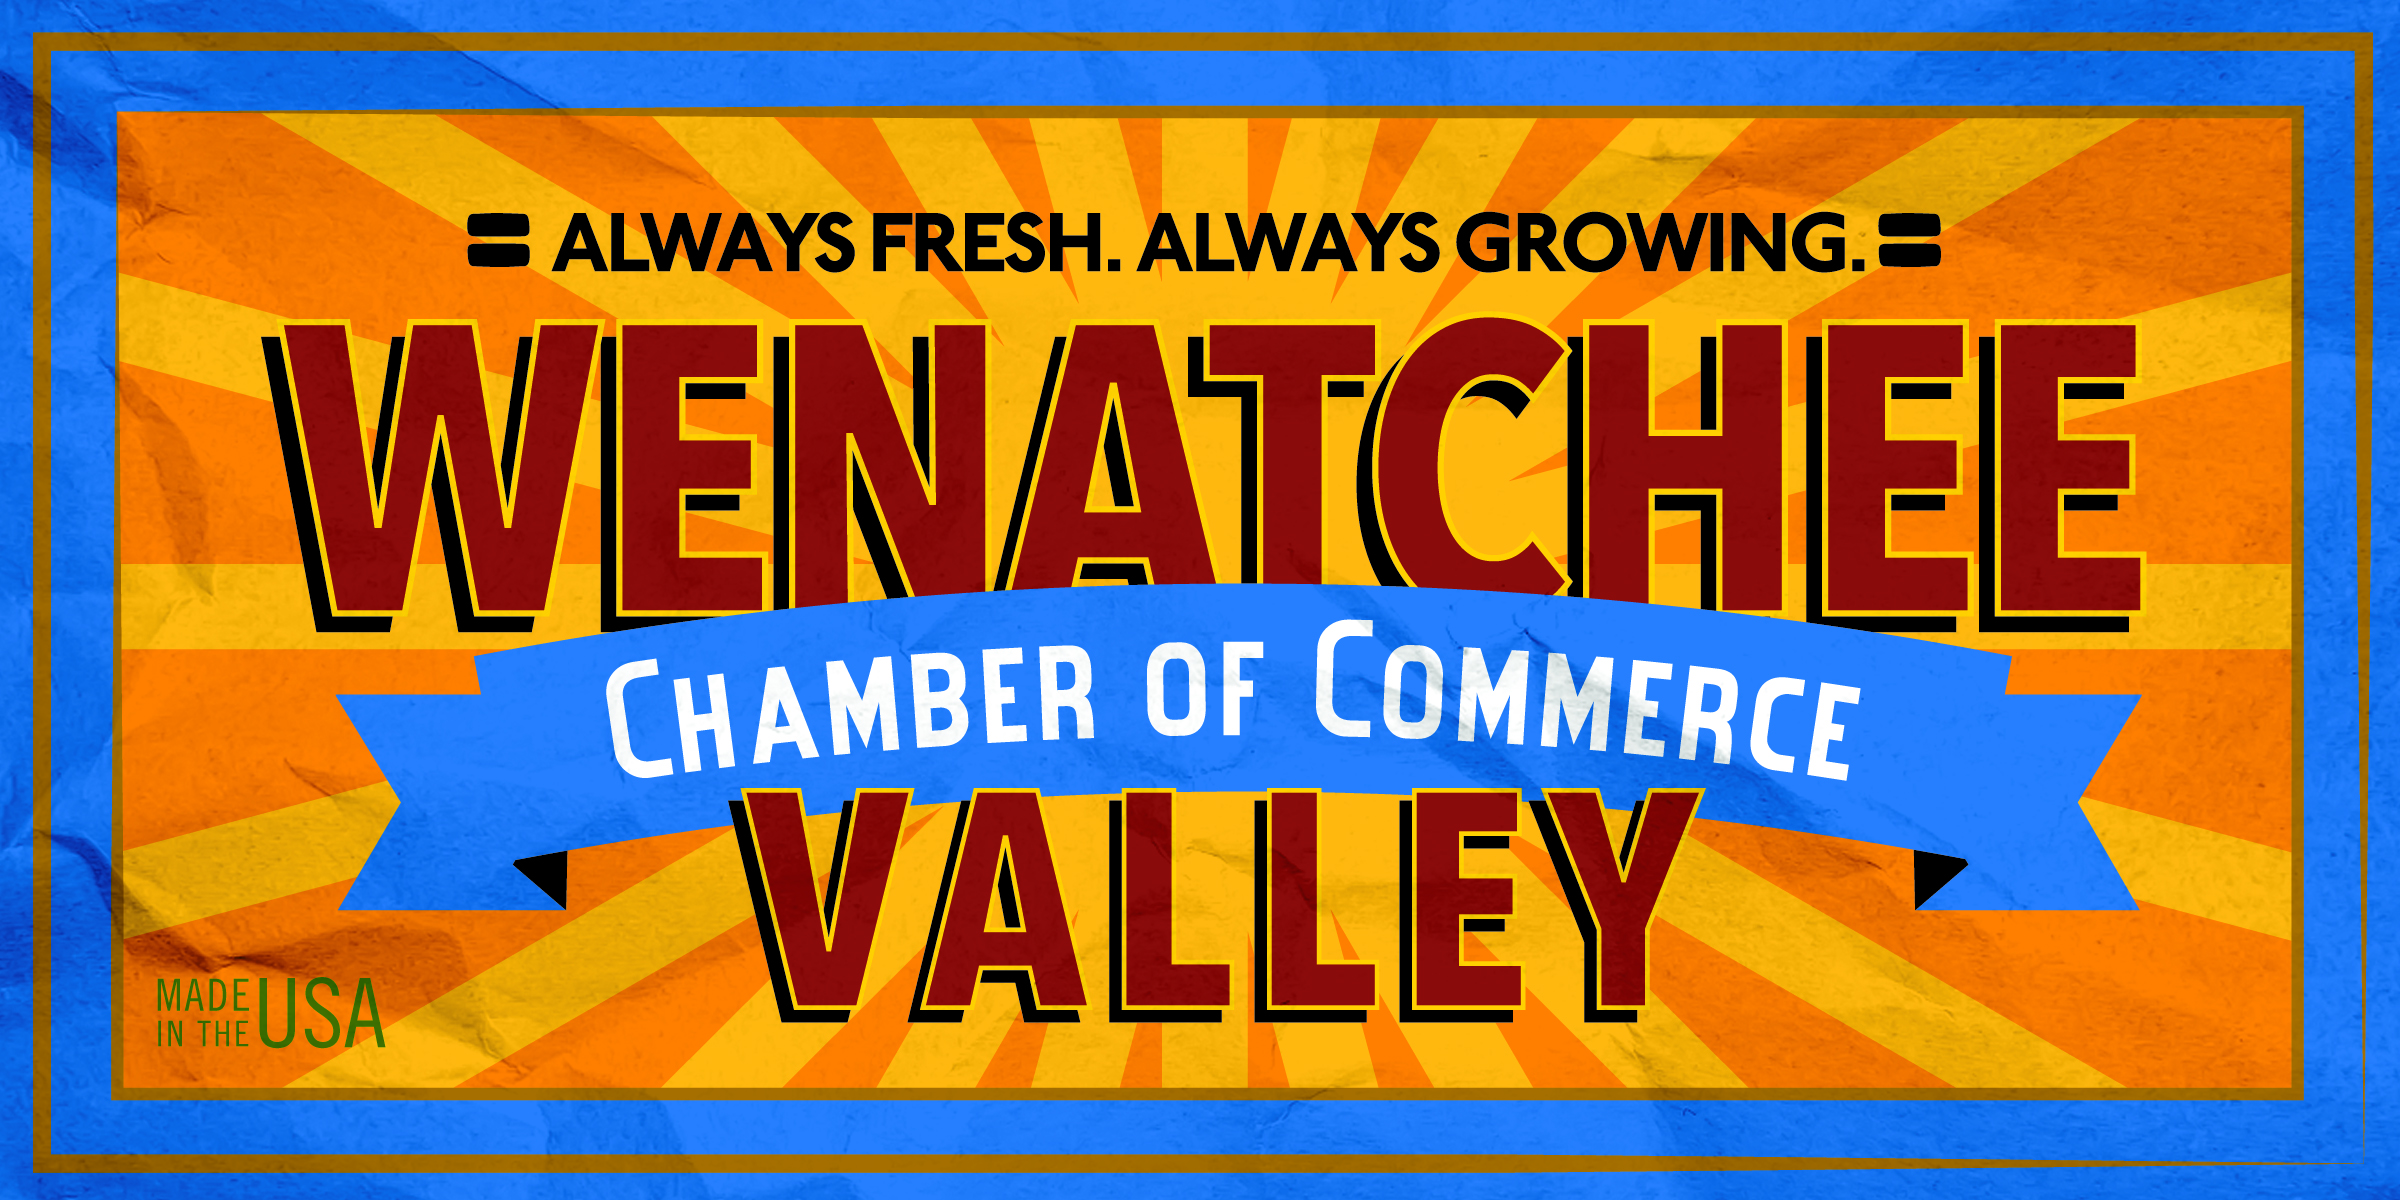 Wenatchee chamber of commerce.jpg